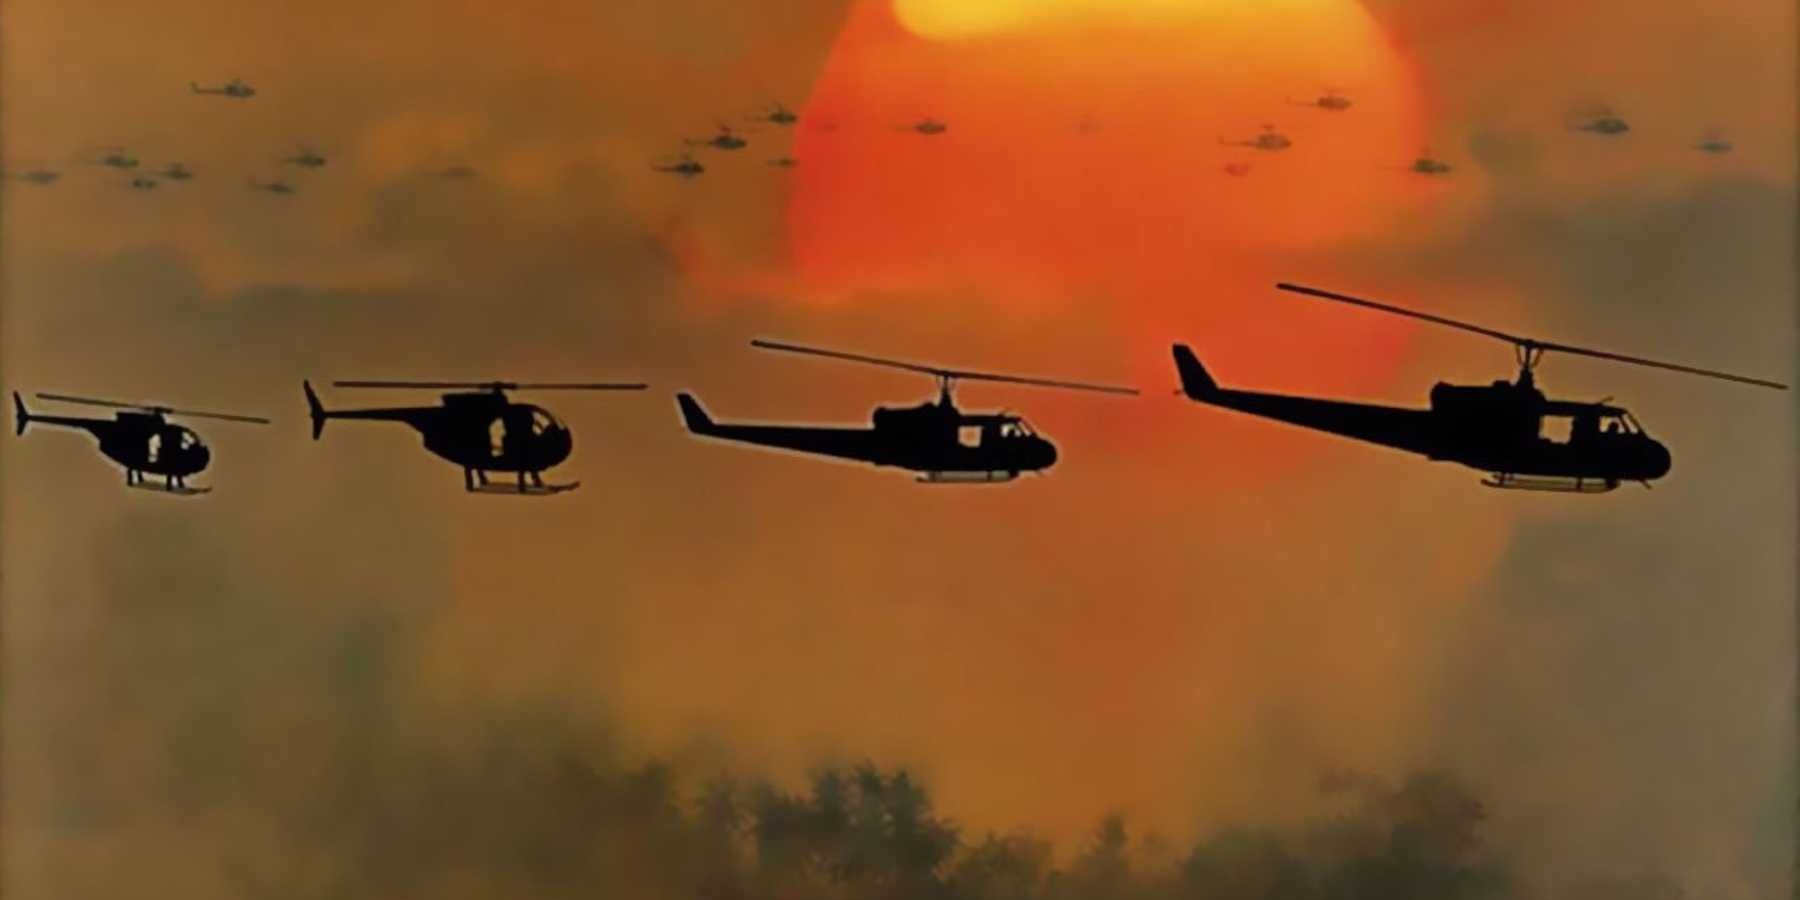 Cuatro helicópteros vuelan en la distancia con el sol abrasador de fondo en Apocalypse Now.